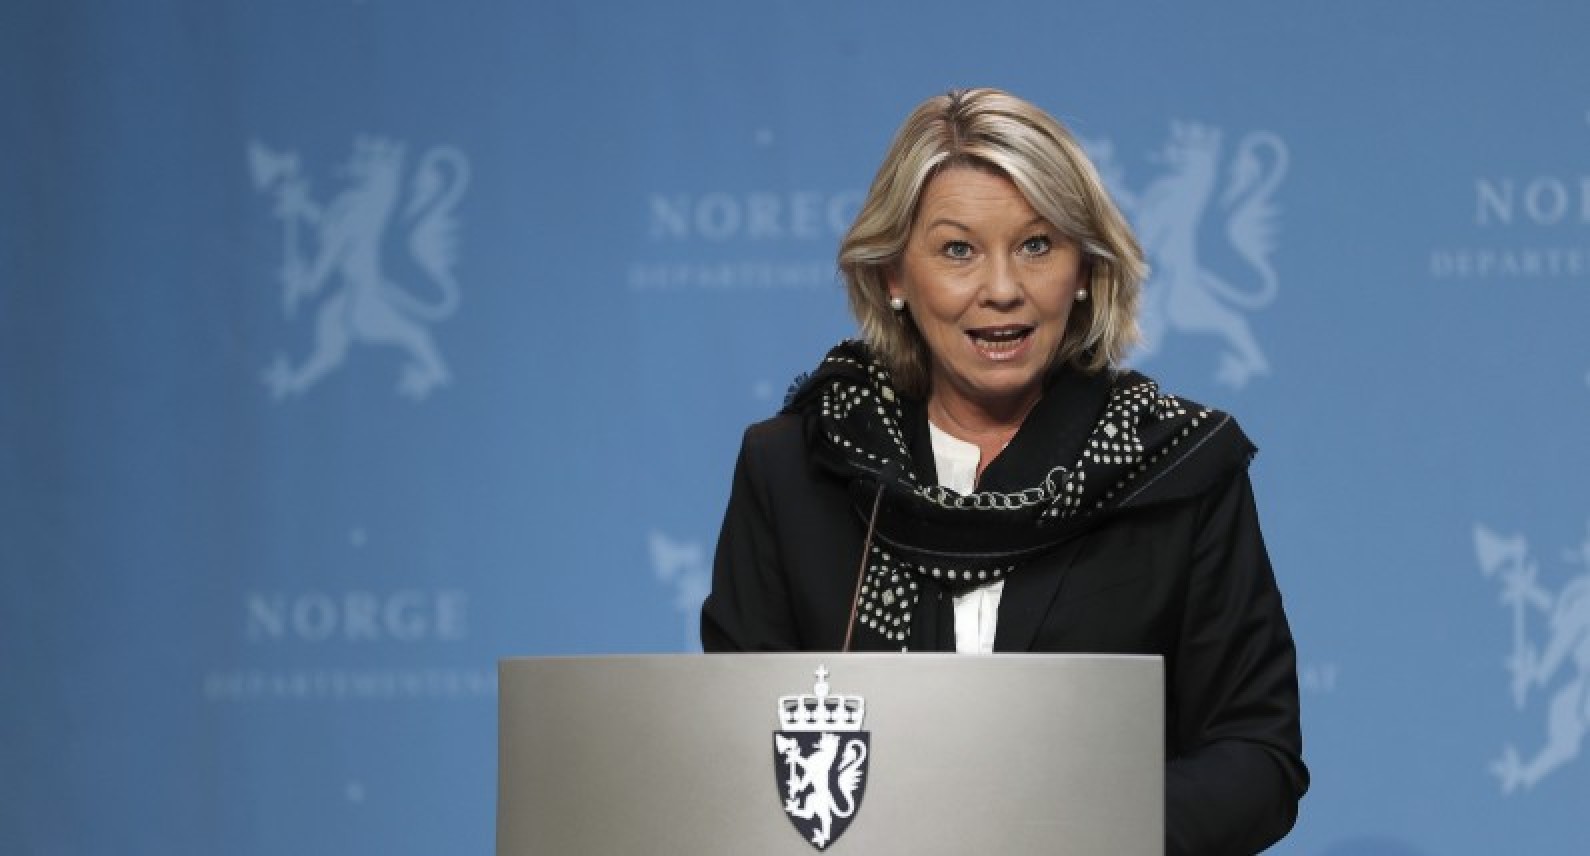 7 miesięcy po lockdownie: Norwegia w kryzysie, ale widać oznaki poprawy